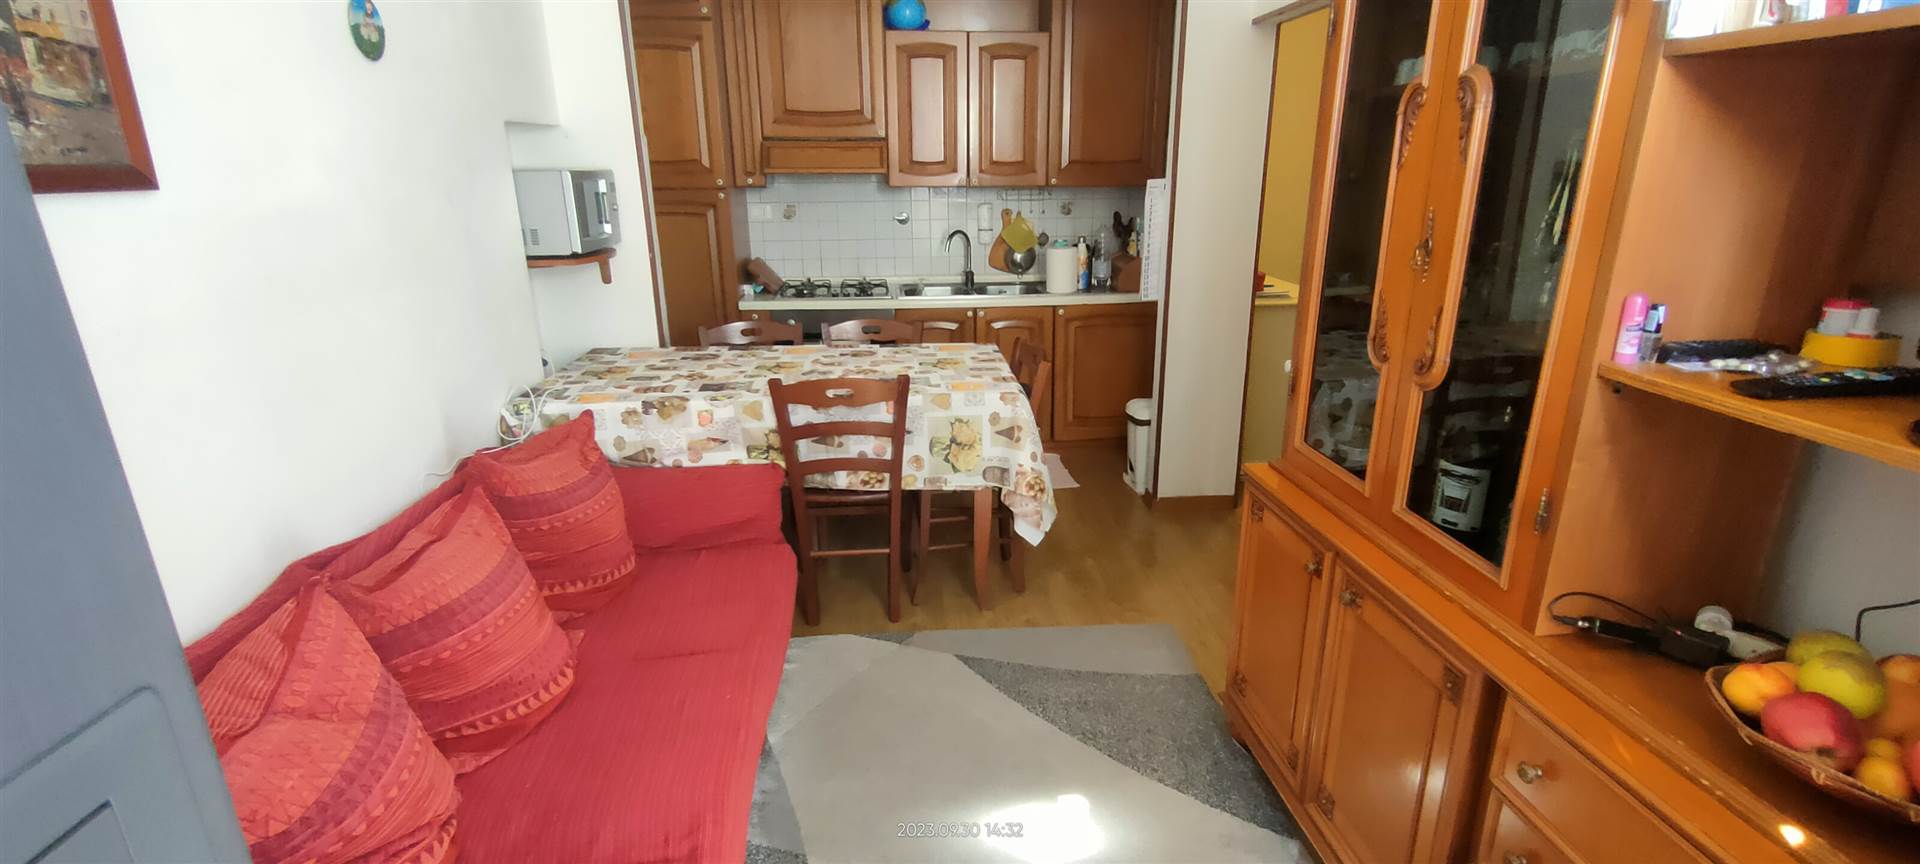 Appartamento in vendita a Scandicci, 3 locali, zona Località: OLMO, prezzo € 210.000 | PortaleAgenzieImmobiliari.it